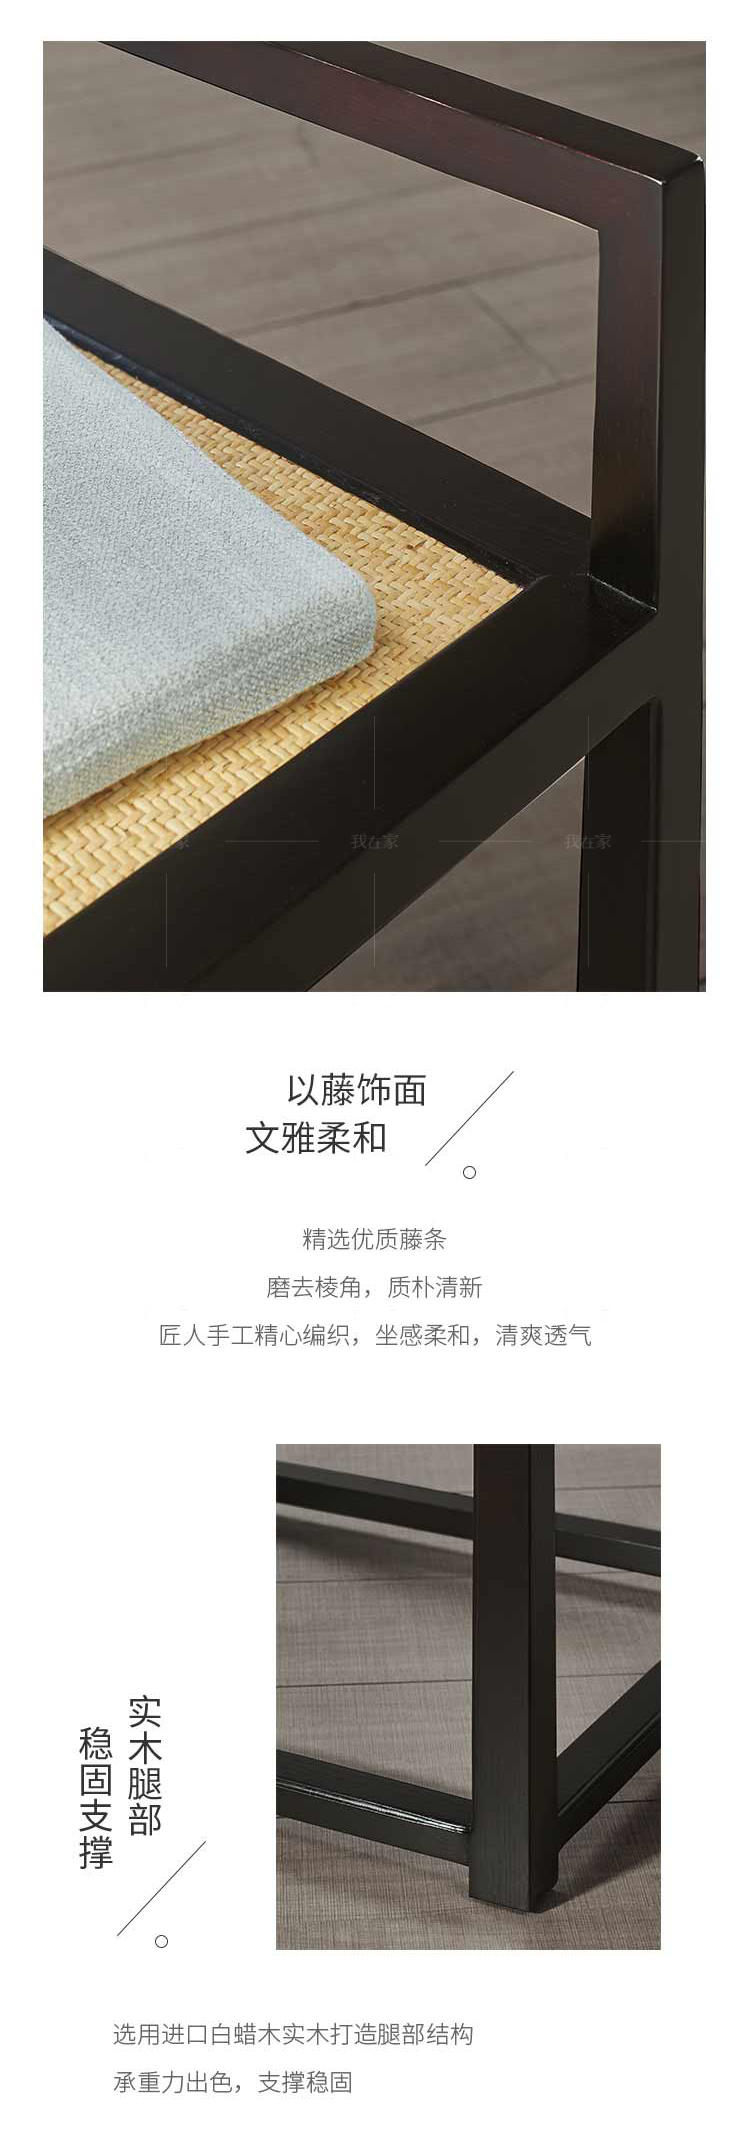 新中式风格云锦餐椅的家具详细介绍